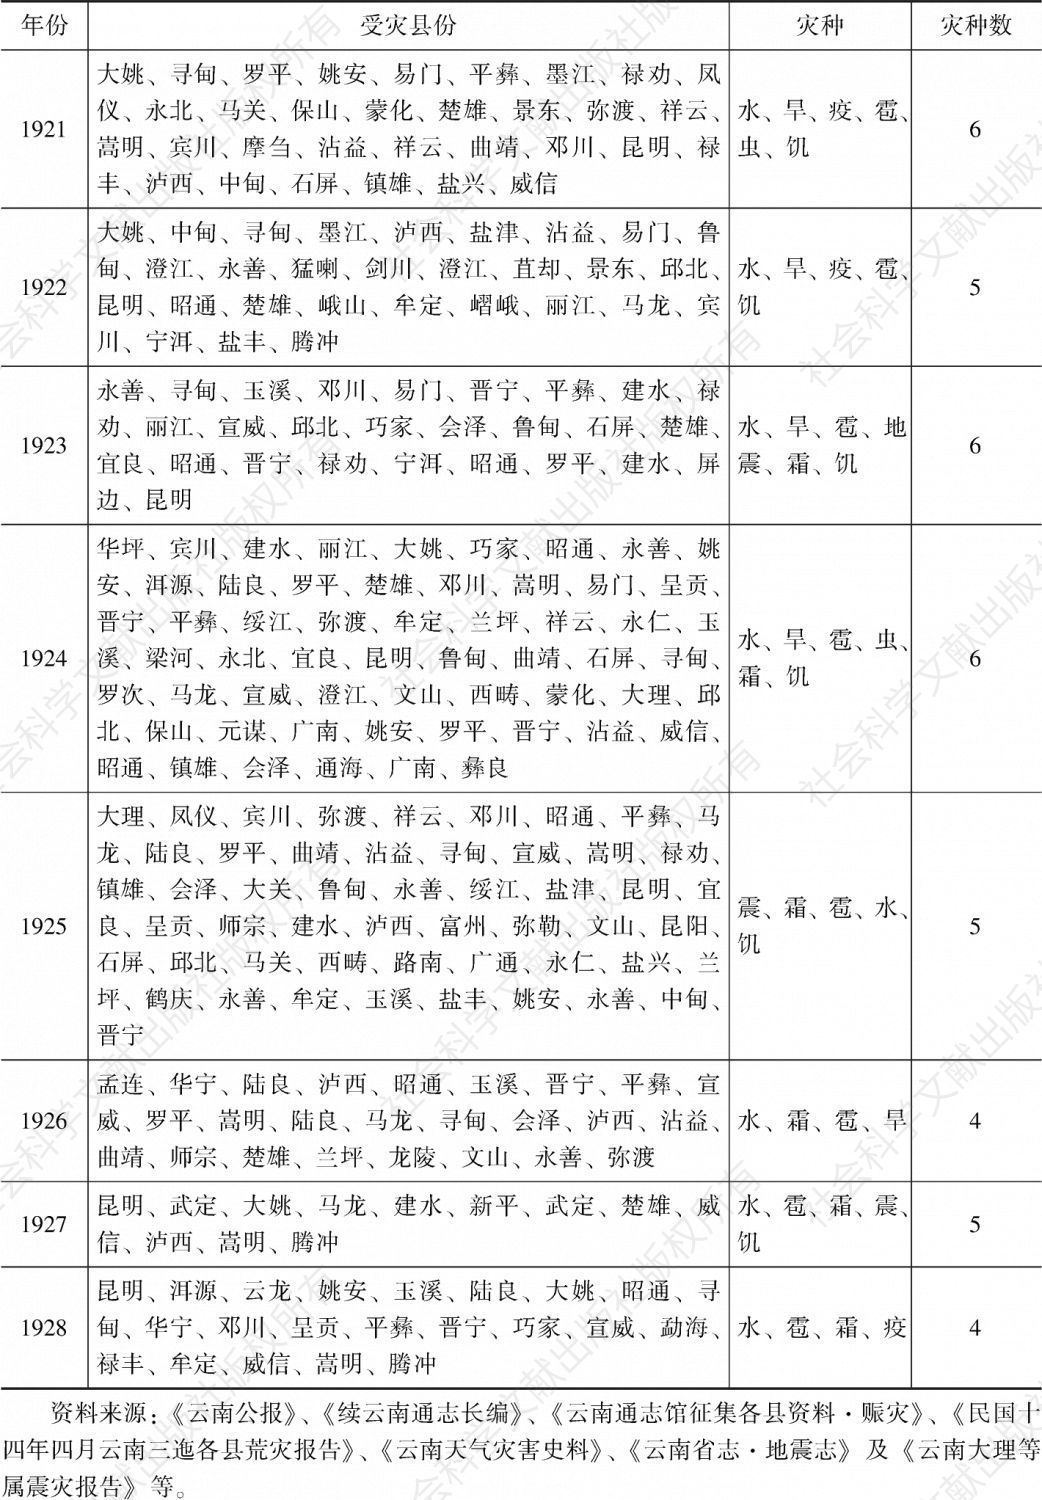 1912～1928年云南灾荒编年简表-续表